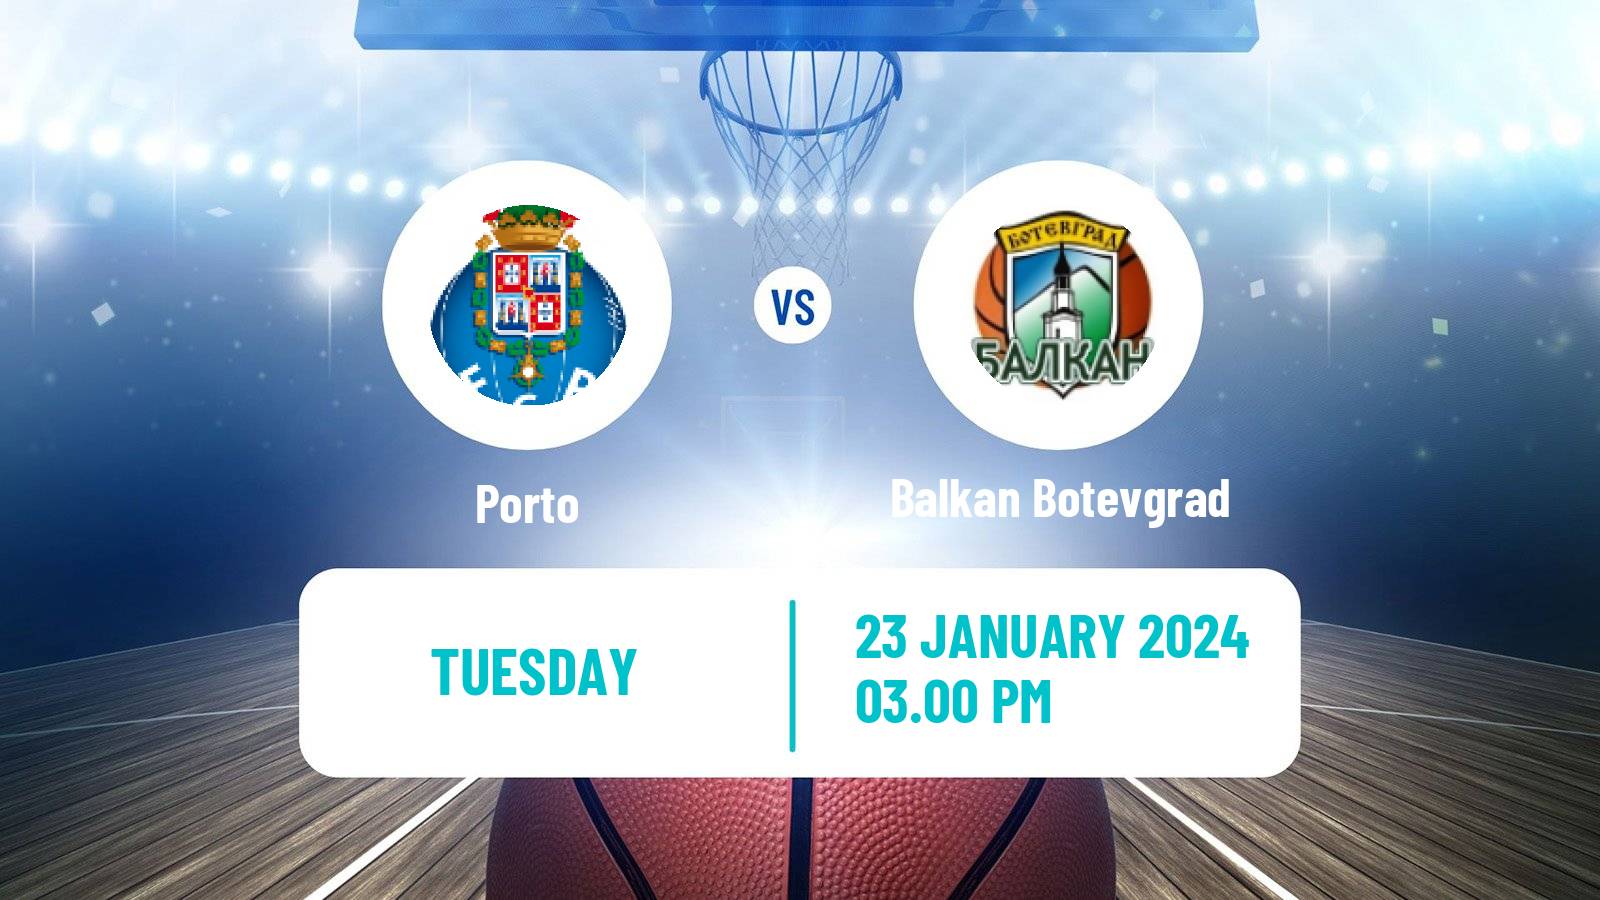 Basketball FIBA Europe Cup Porto - Balkan Botevgrad